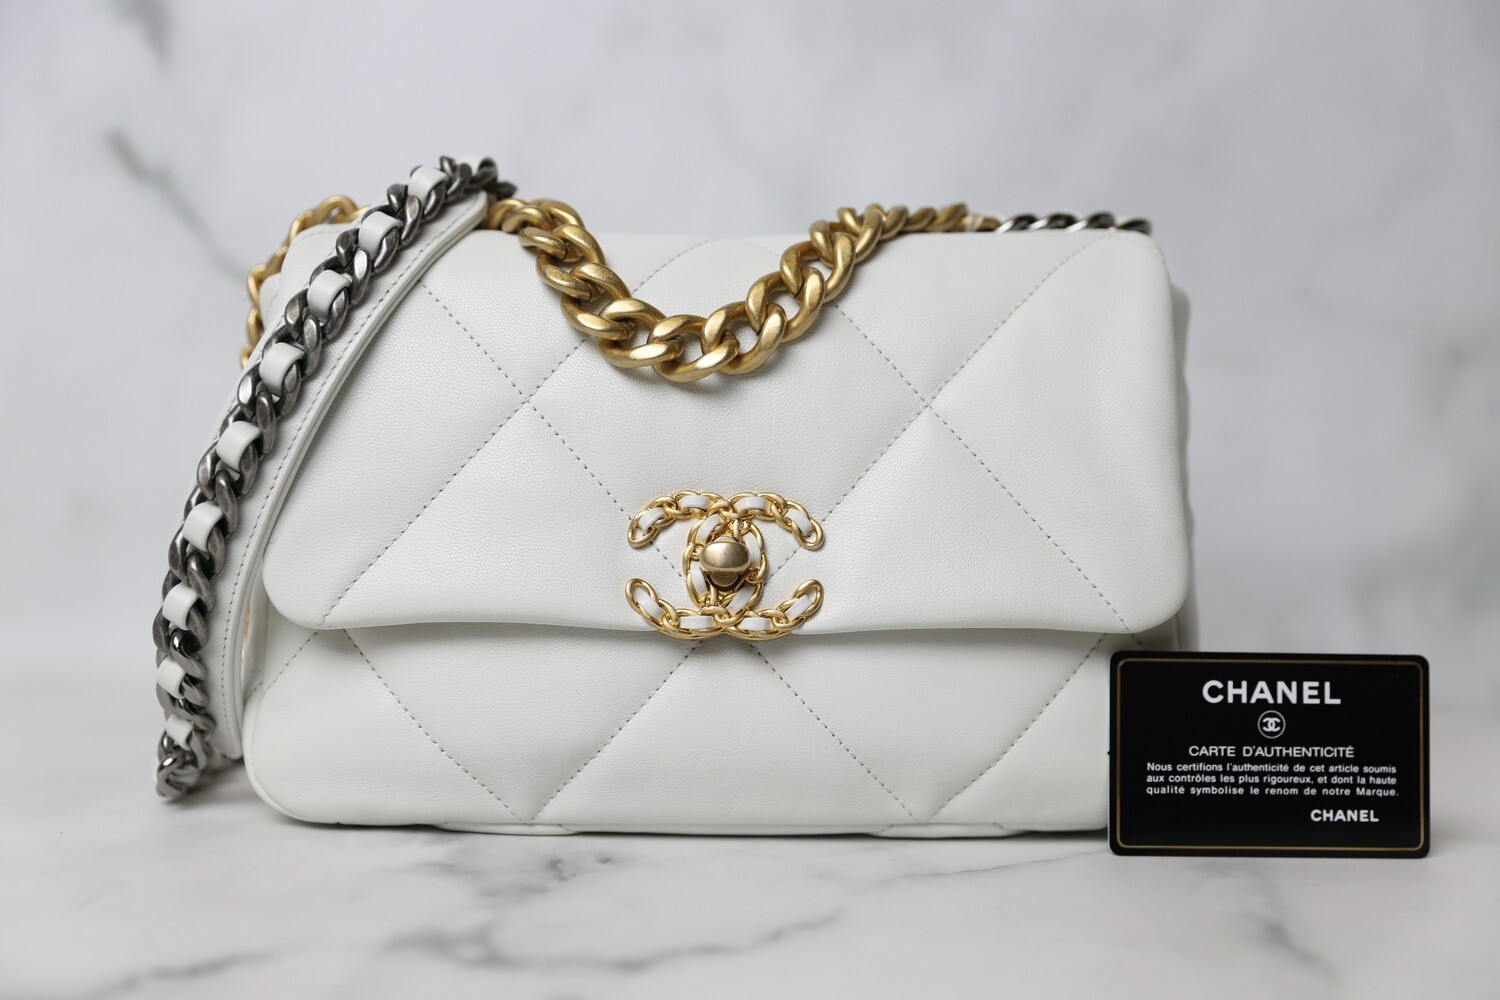 Chanel 19 Classic Small White, New in Box WA001